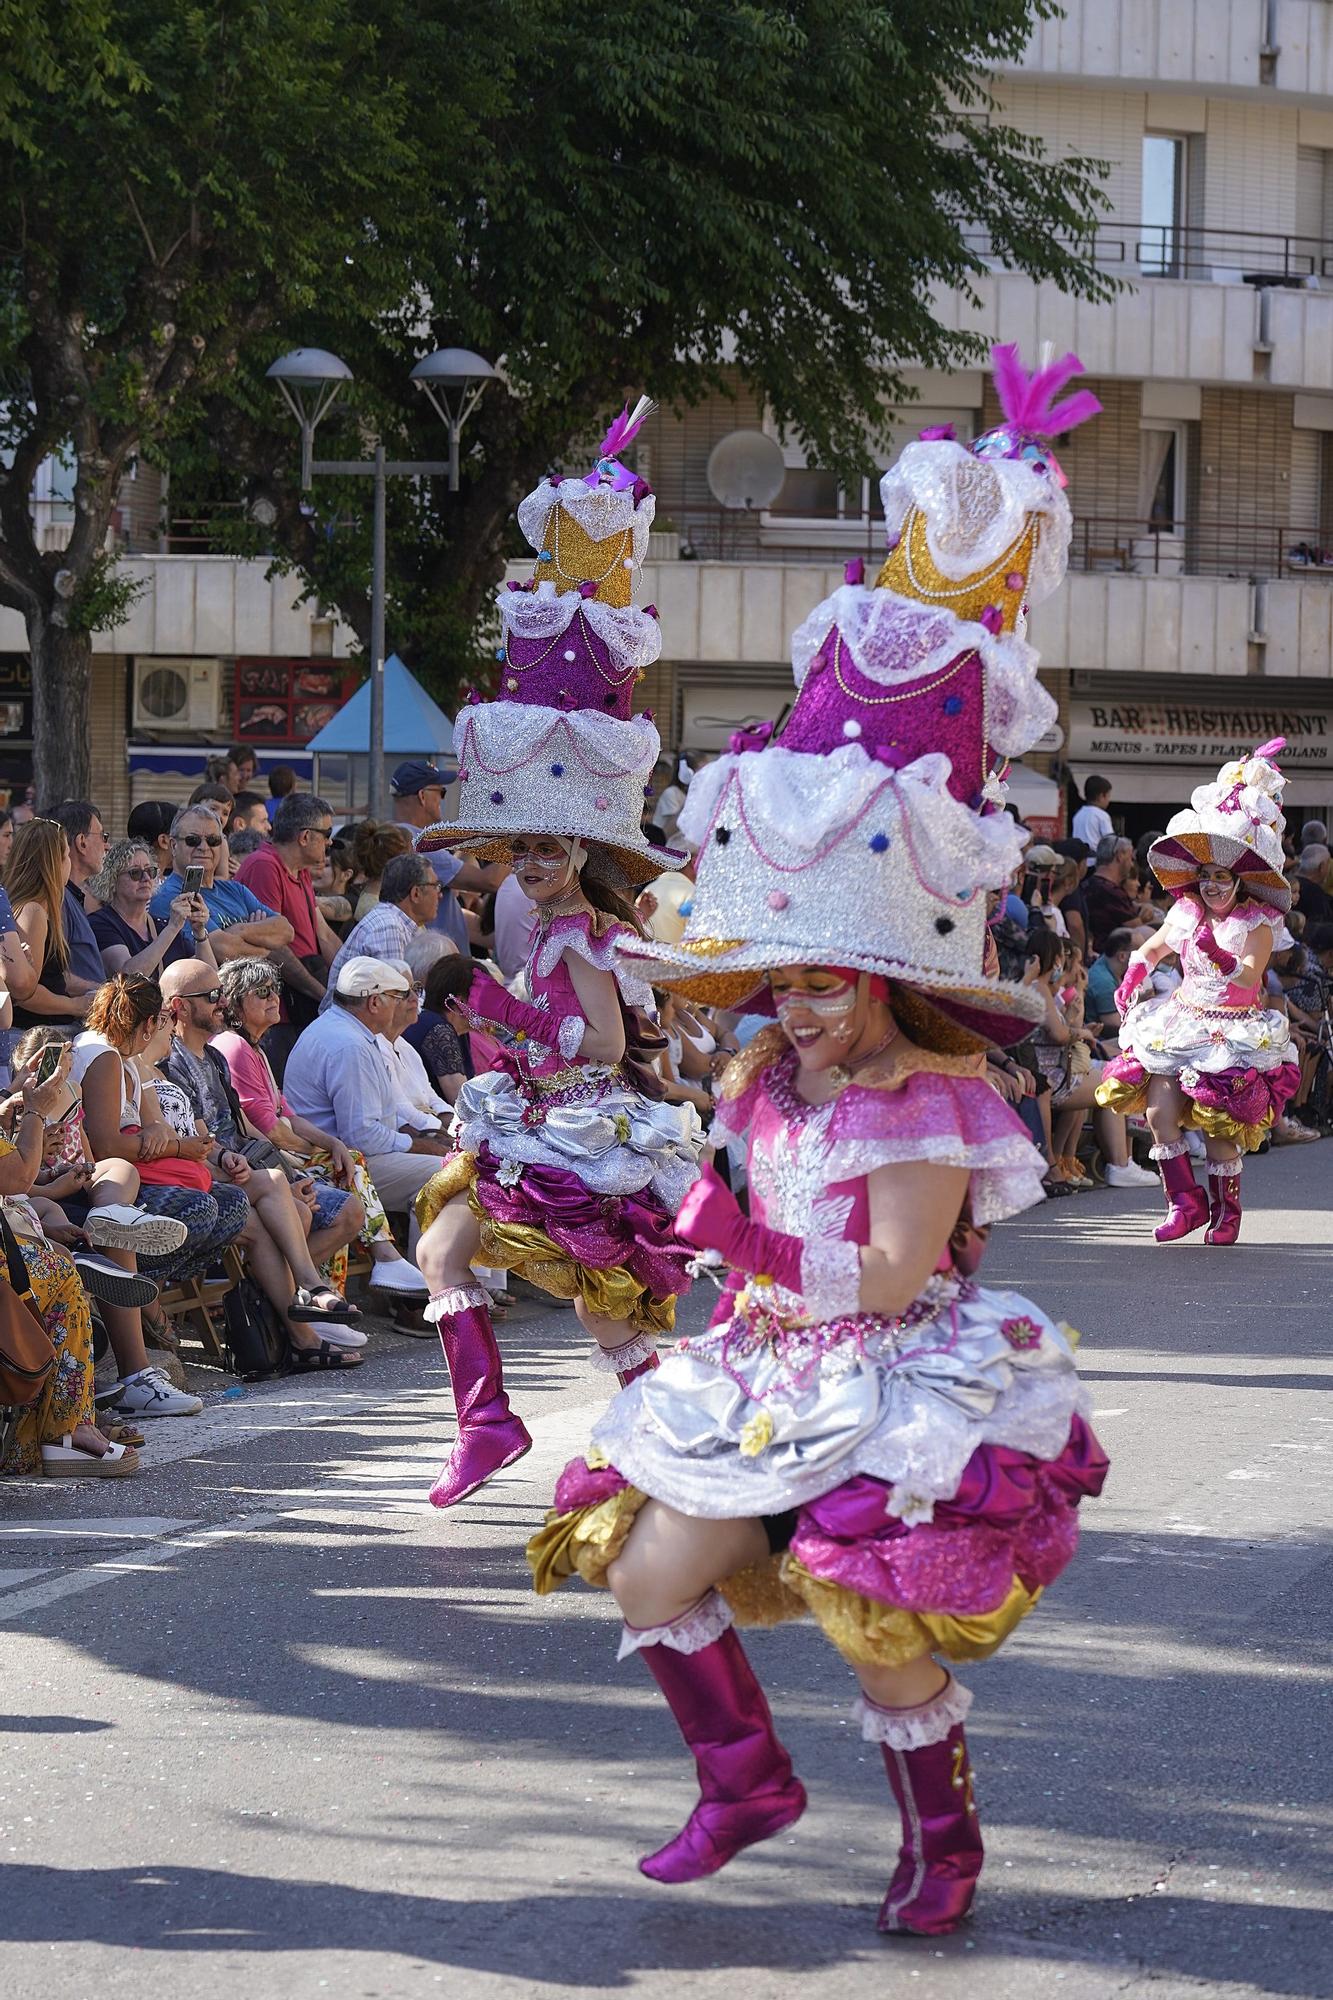 El Carroussel Costa Brava, el Carnaval dels Carnavals de Palafrugell